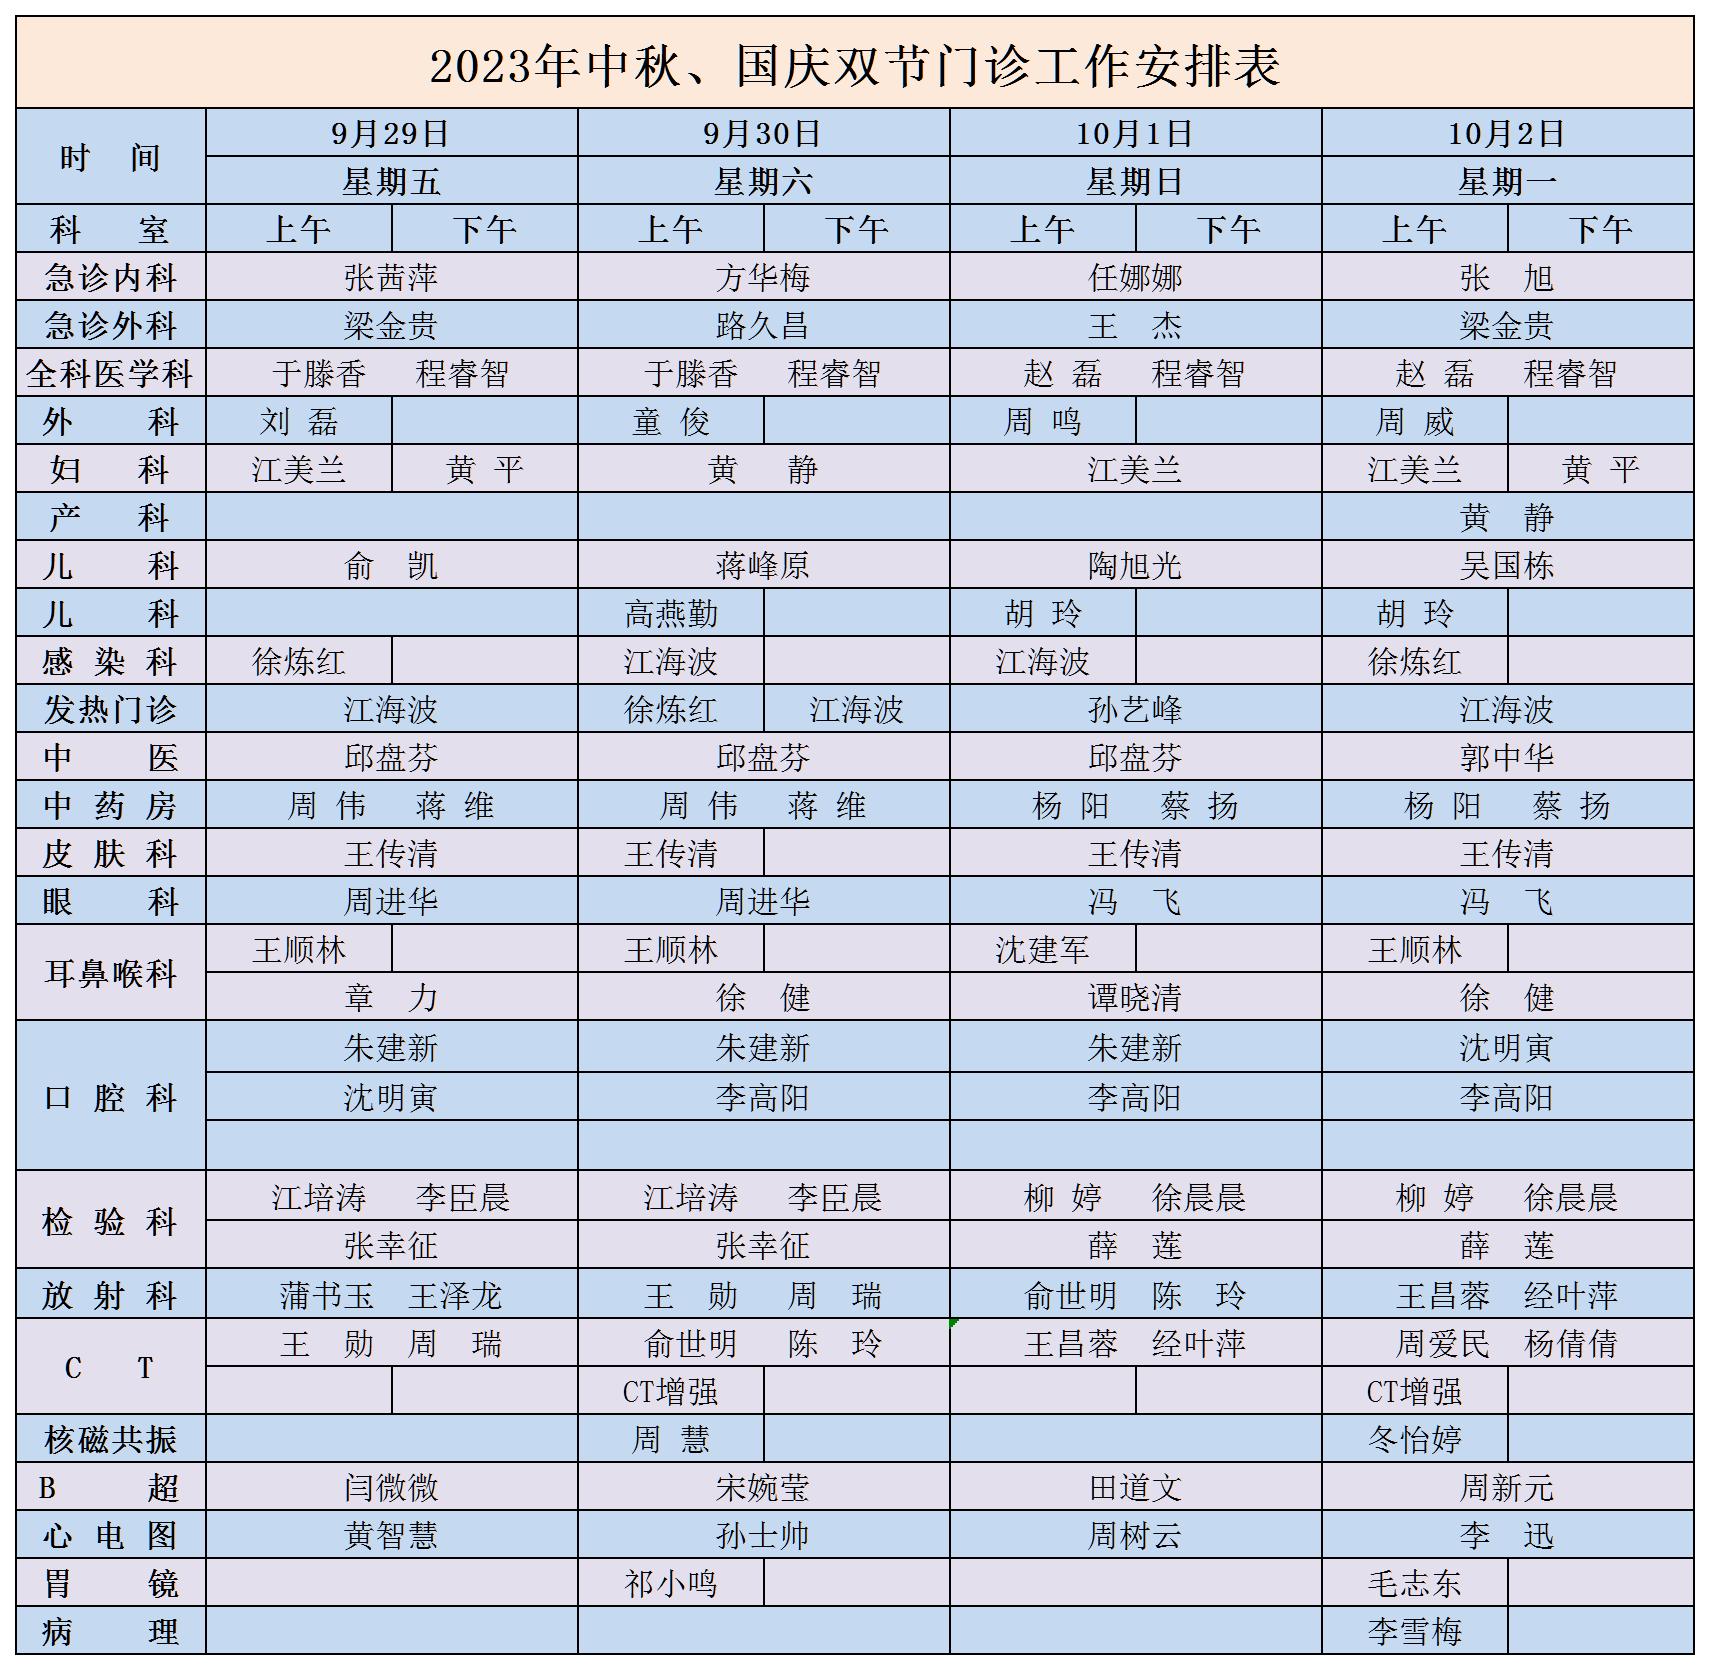 2023年中秋、國慶雙節門診工作安排表_Sheet1.jpg